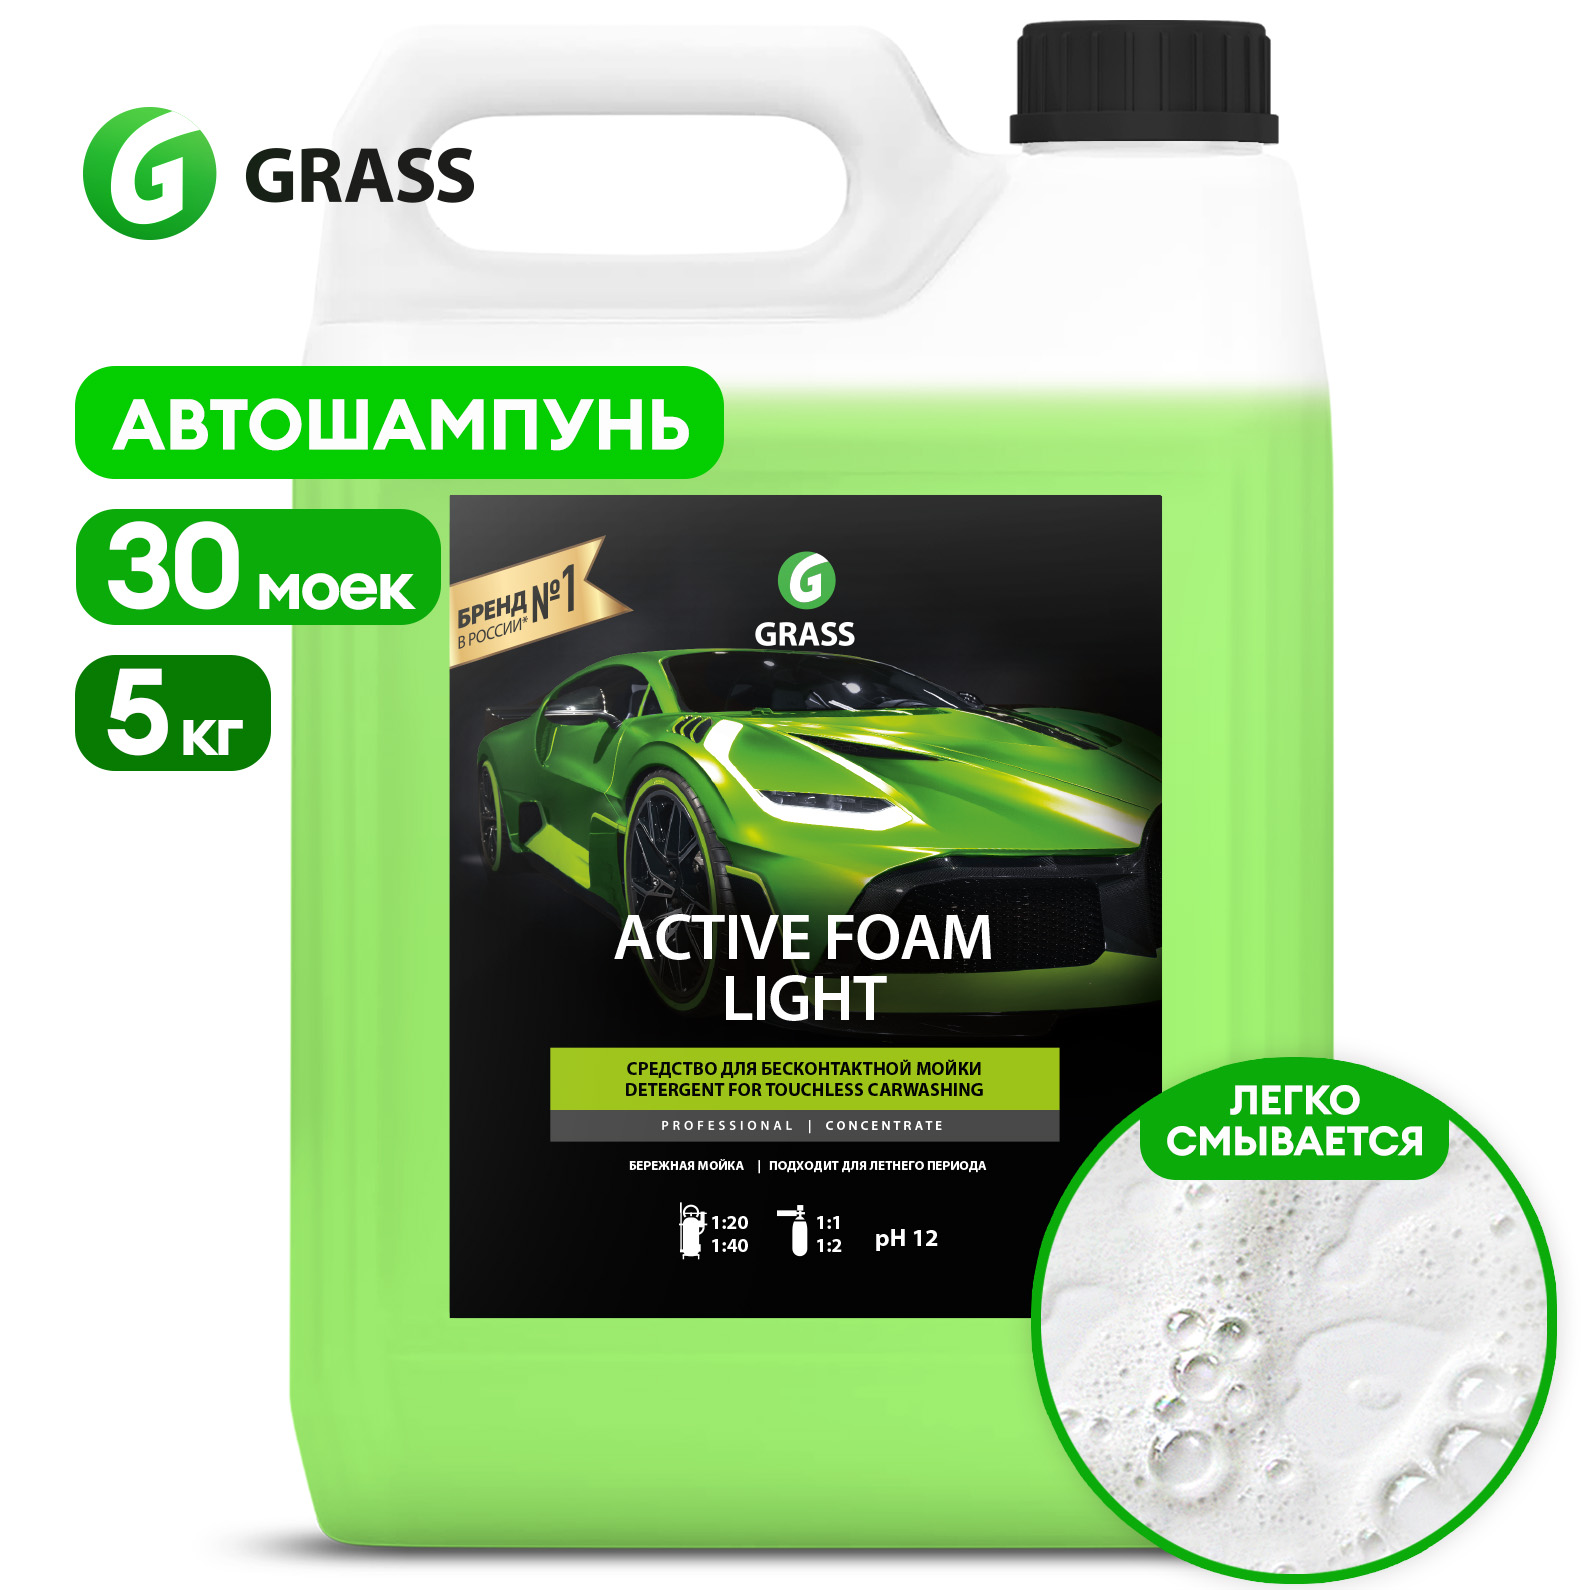 Автошампунь для бесконтактной мойки GRASS Active Foam Light, 5 кг - купить в Москве, цены на Мегамаркет | 100025303615